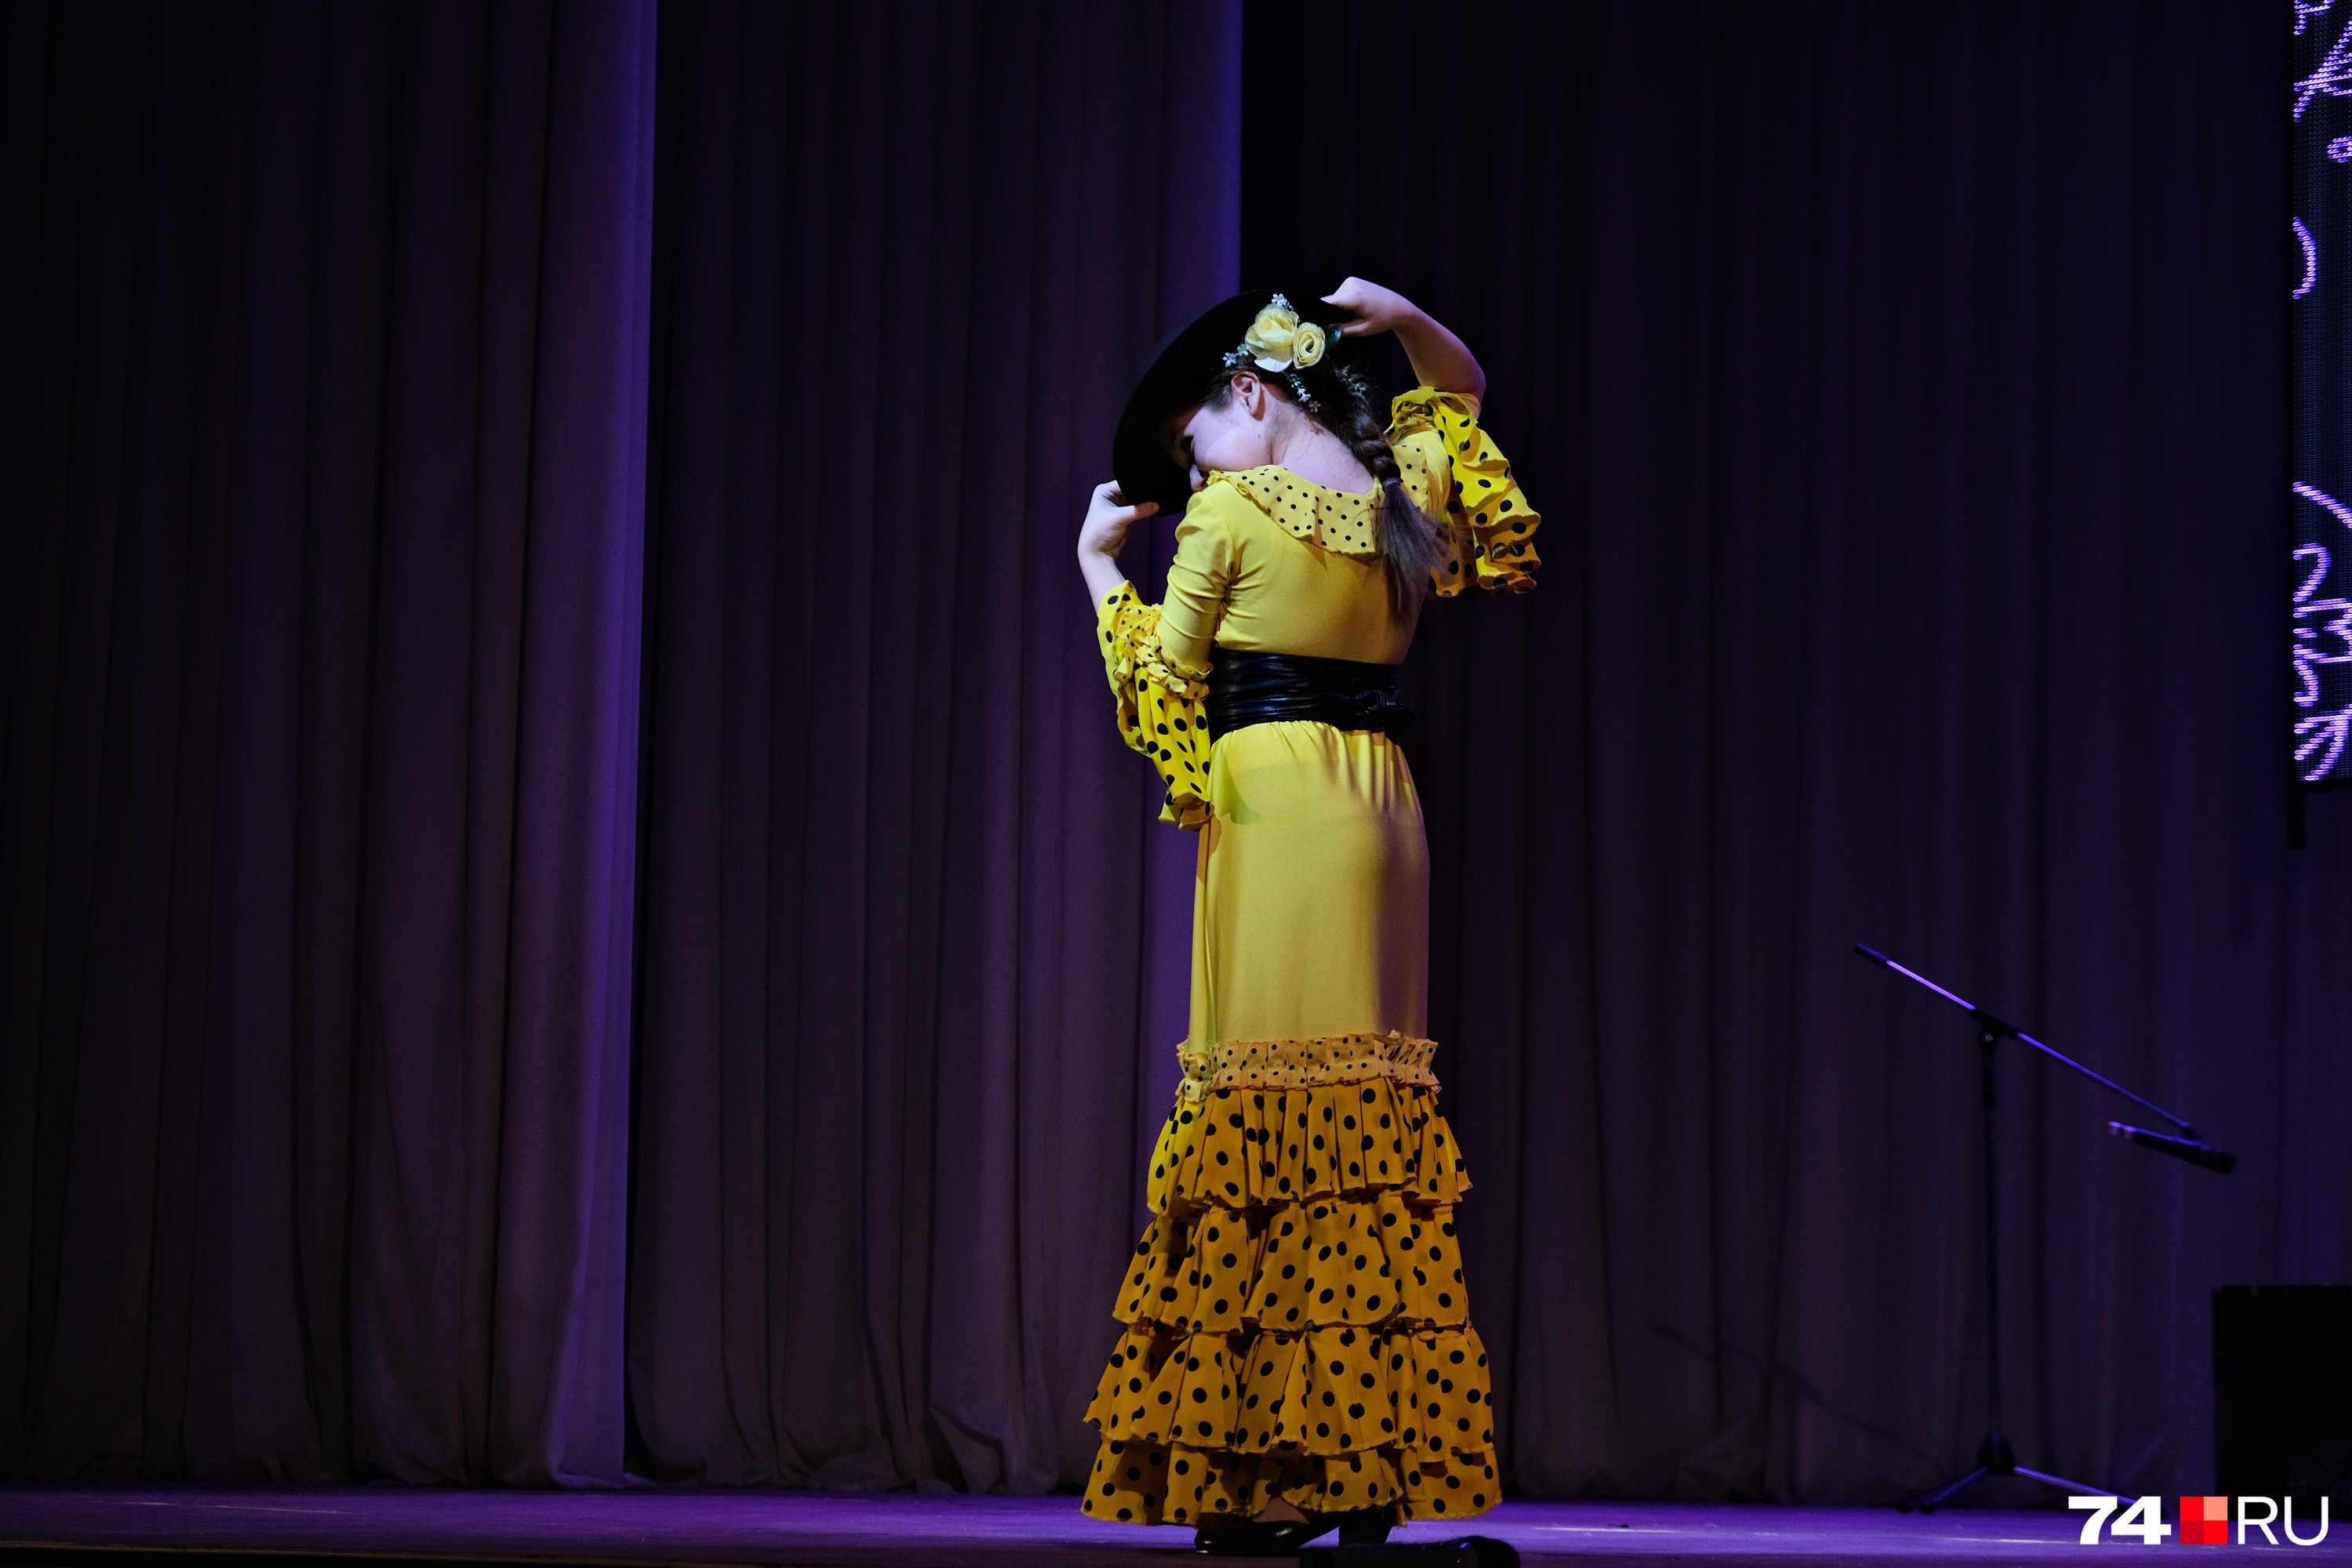 Цыганская культура оказала огромное влияние на фламенко